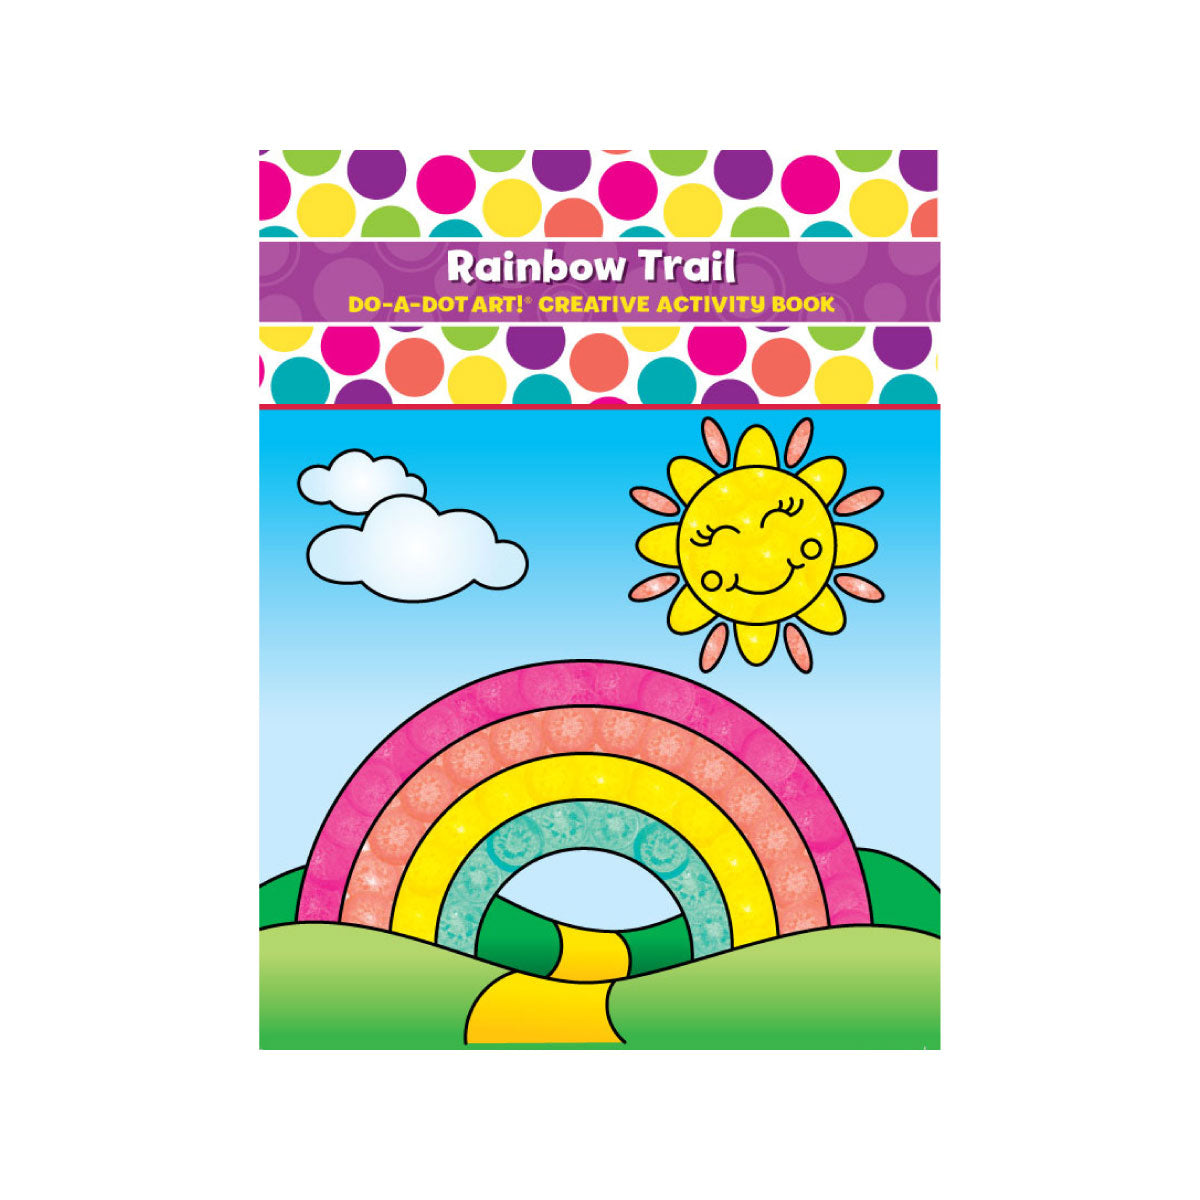 Do a Dot Art Creative Activity Books Rainbow Trail